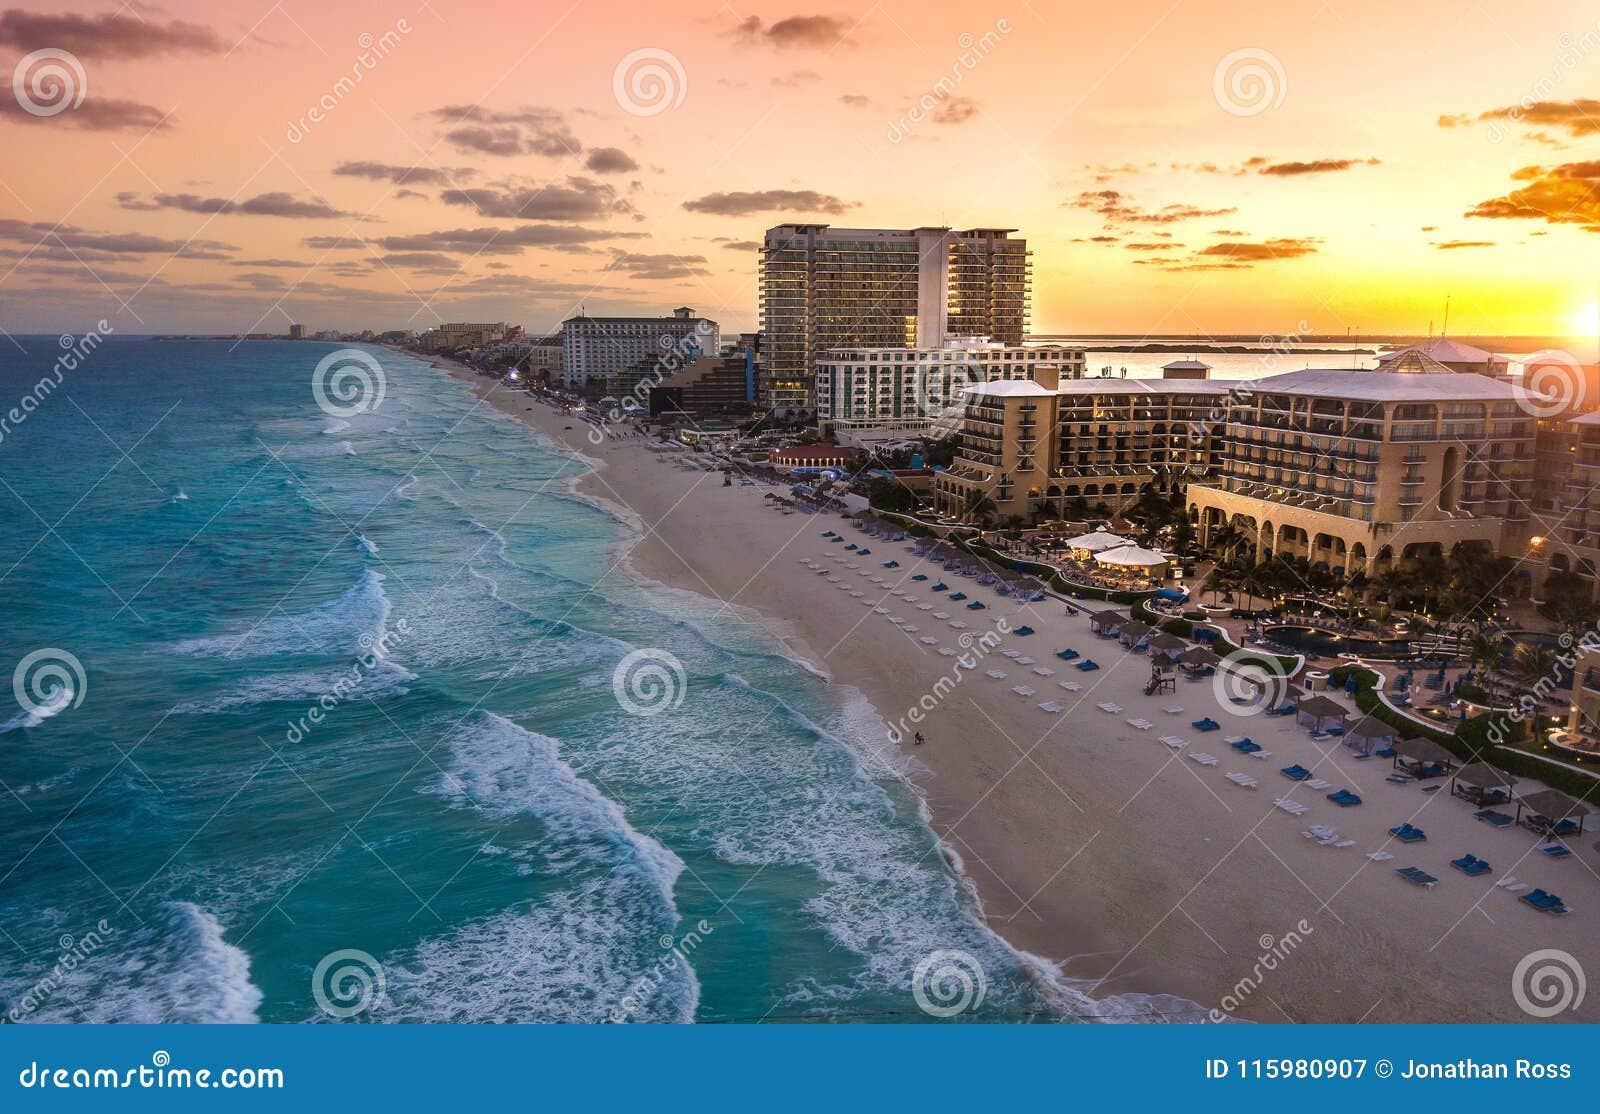 cancun beach at sunset